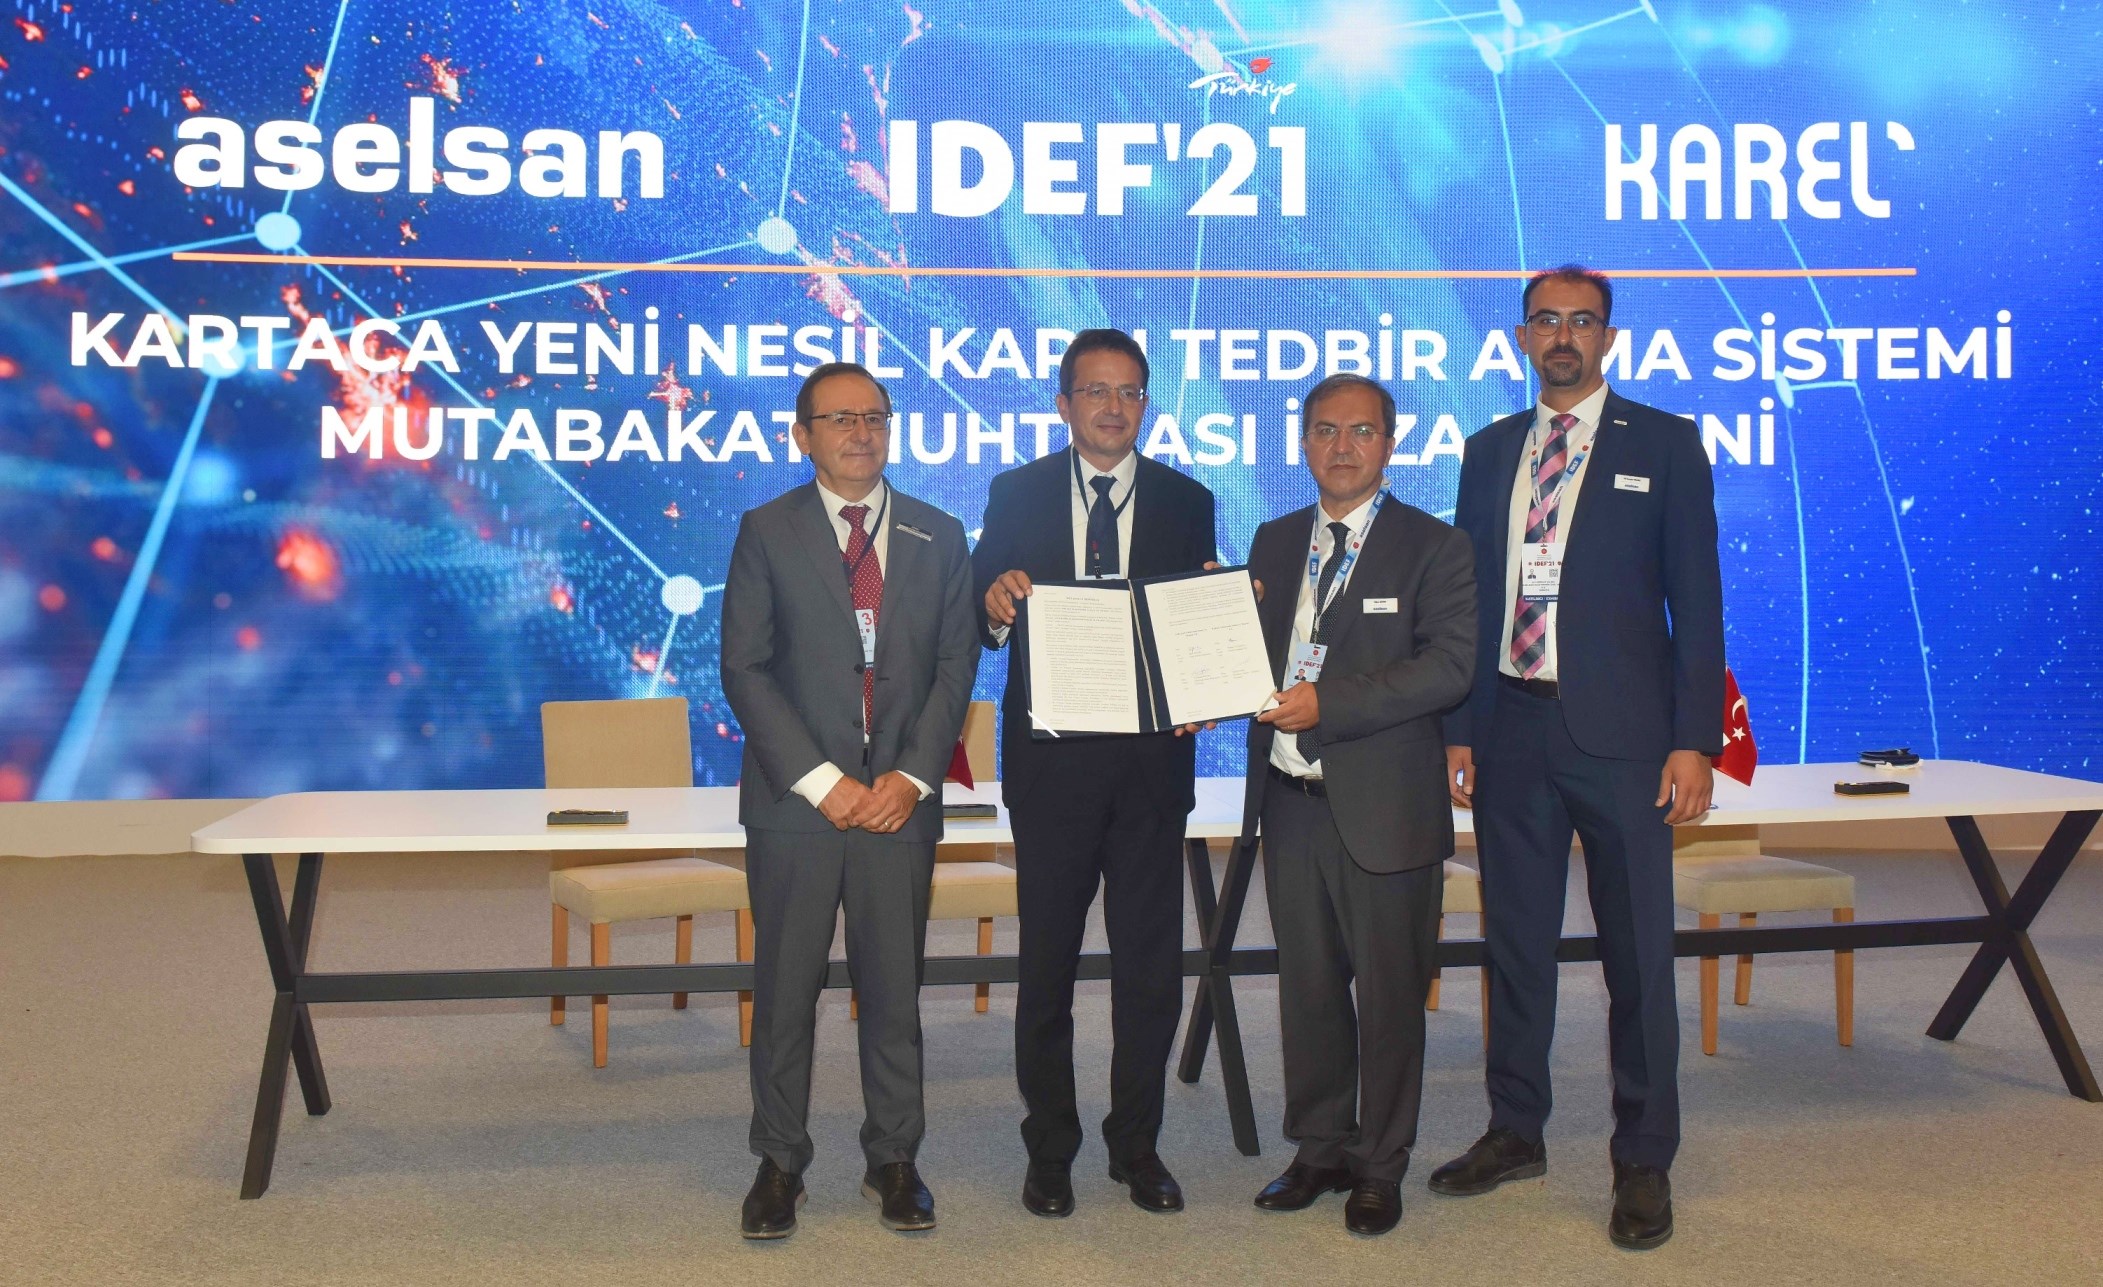 Karel, IDEF 2021’de Aselsan ve TEI ile sözleşme imzaladı